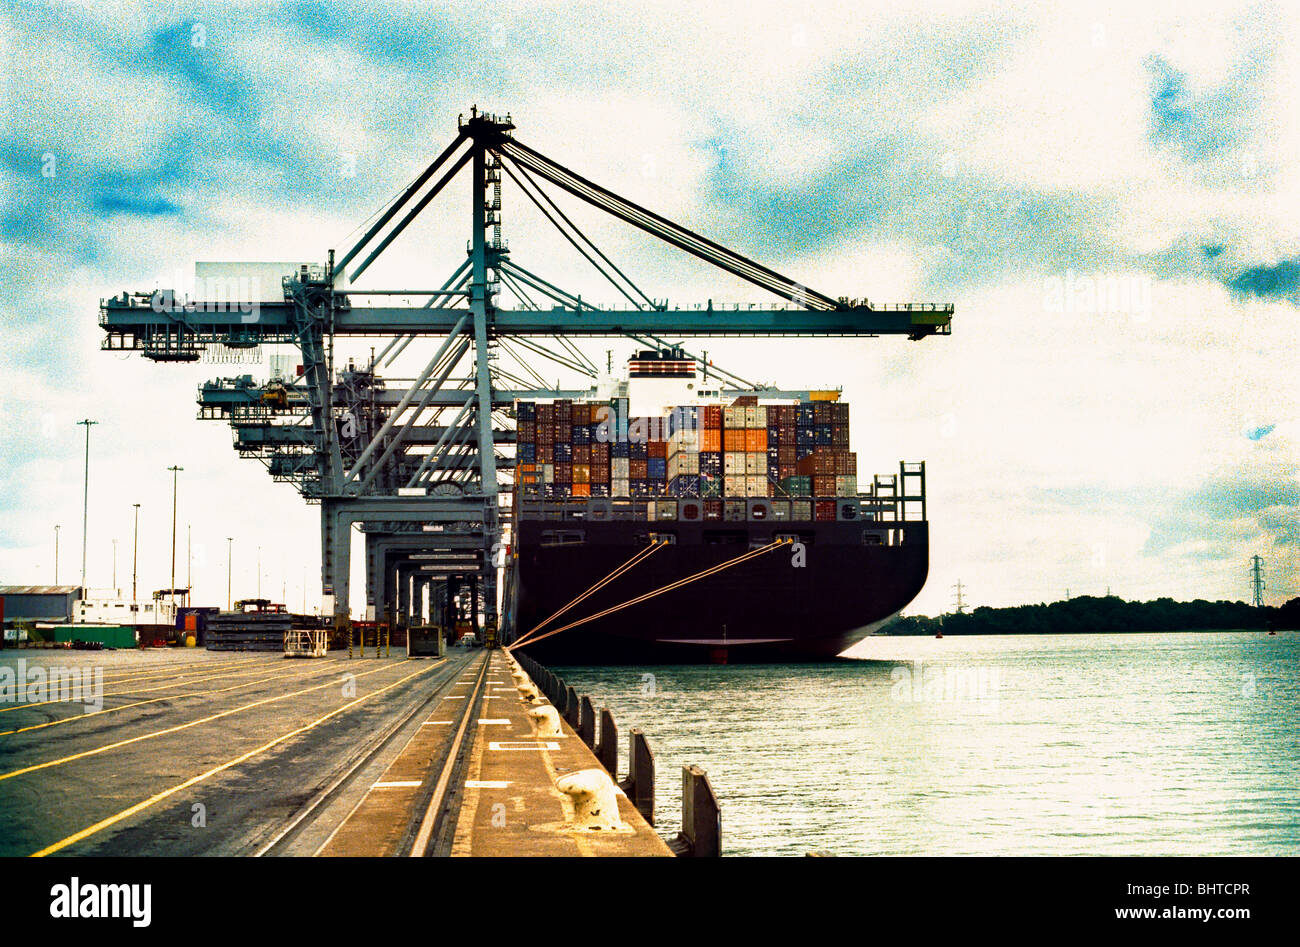 A moored cargo ship containing cargo Stock Photo